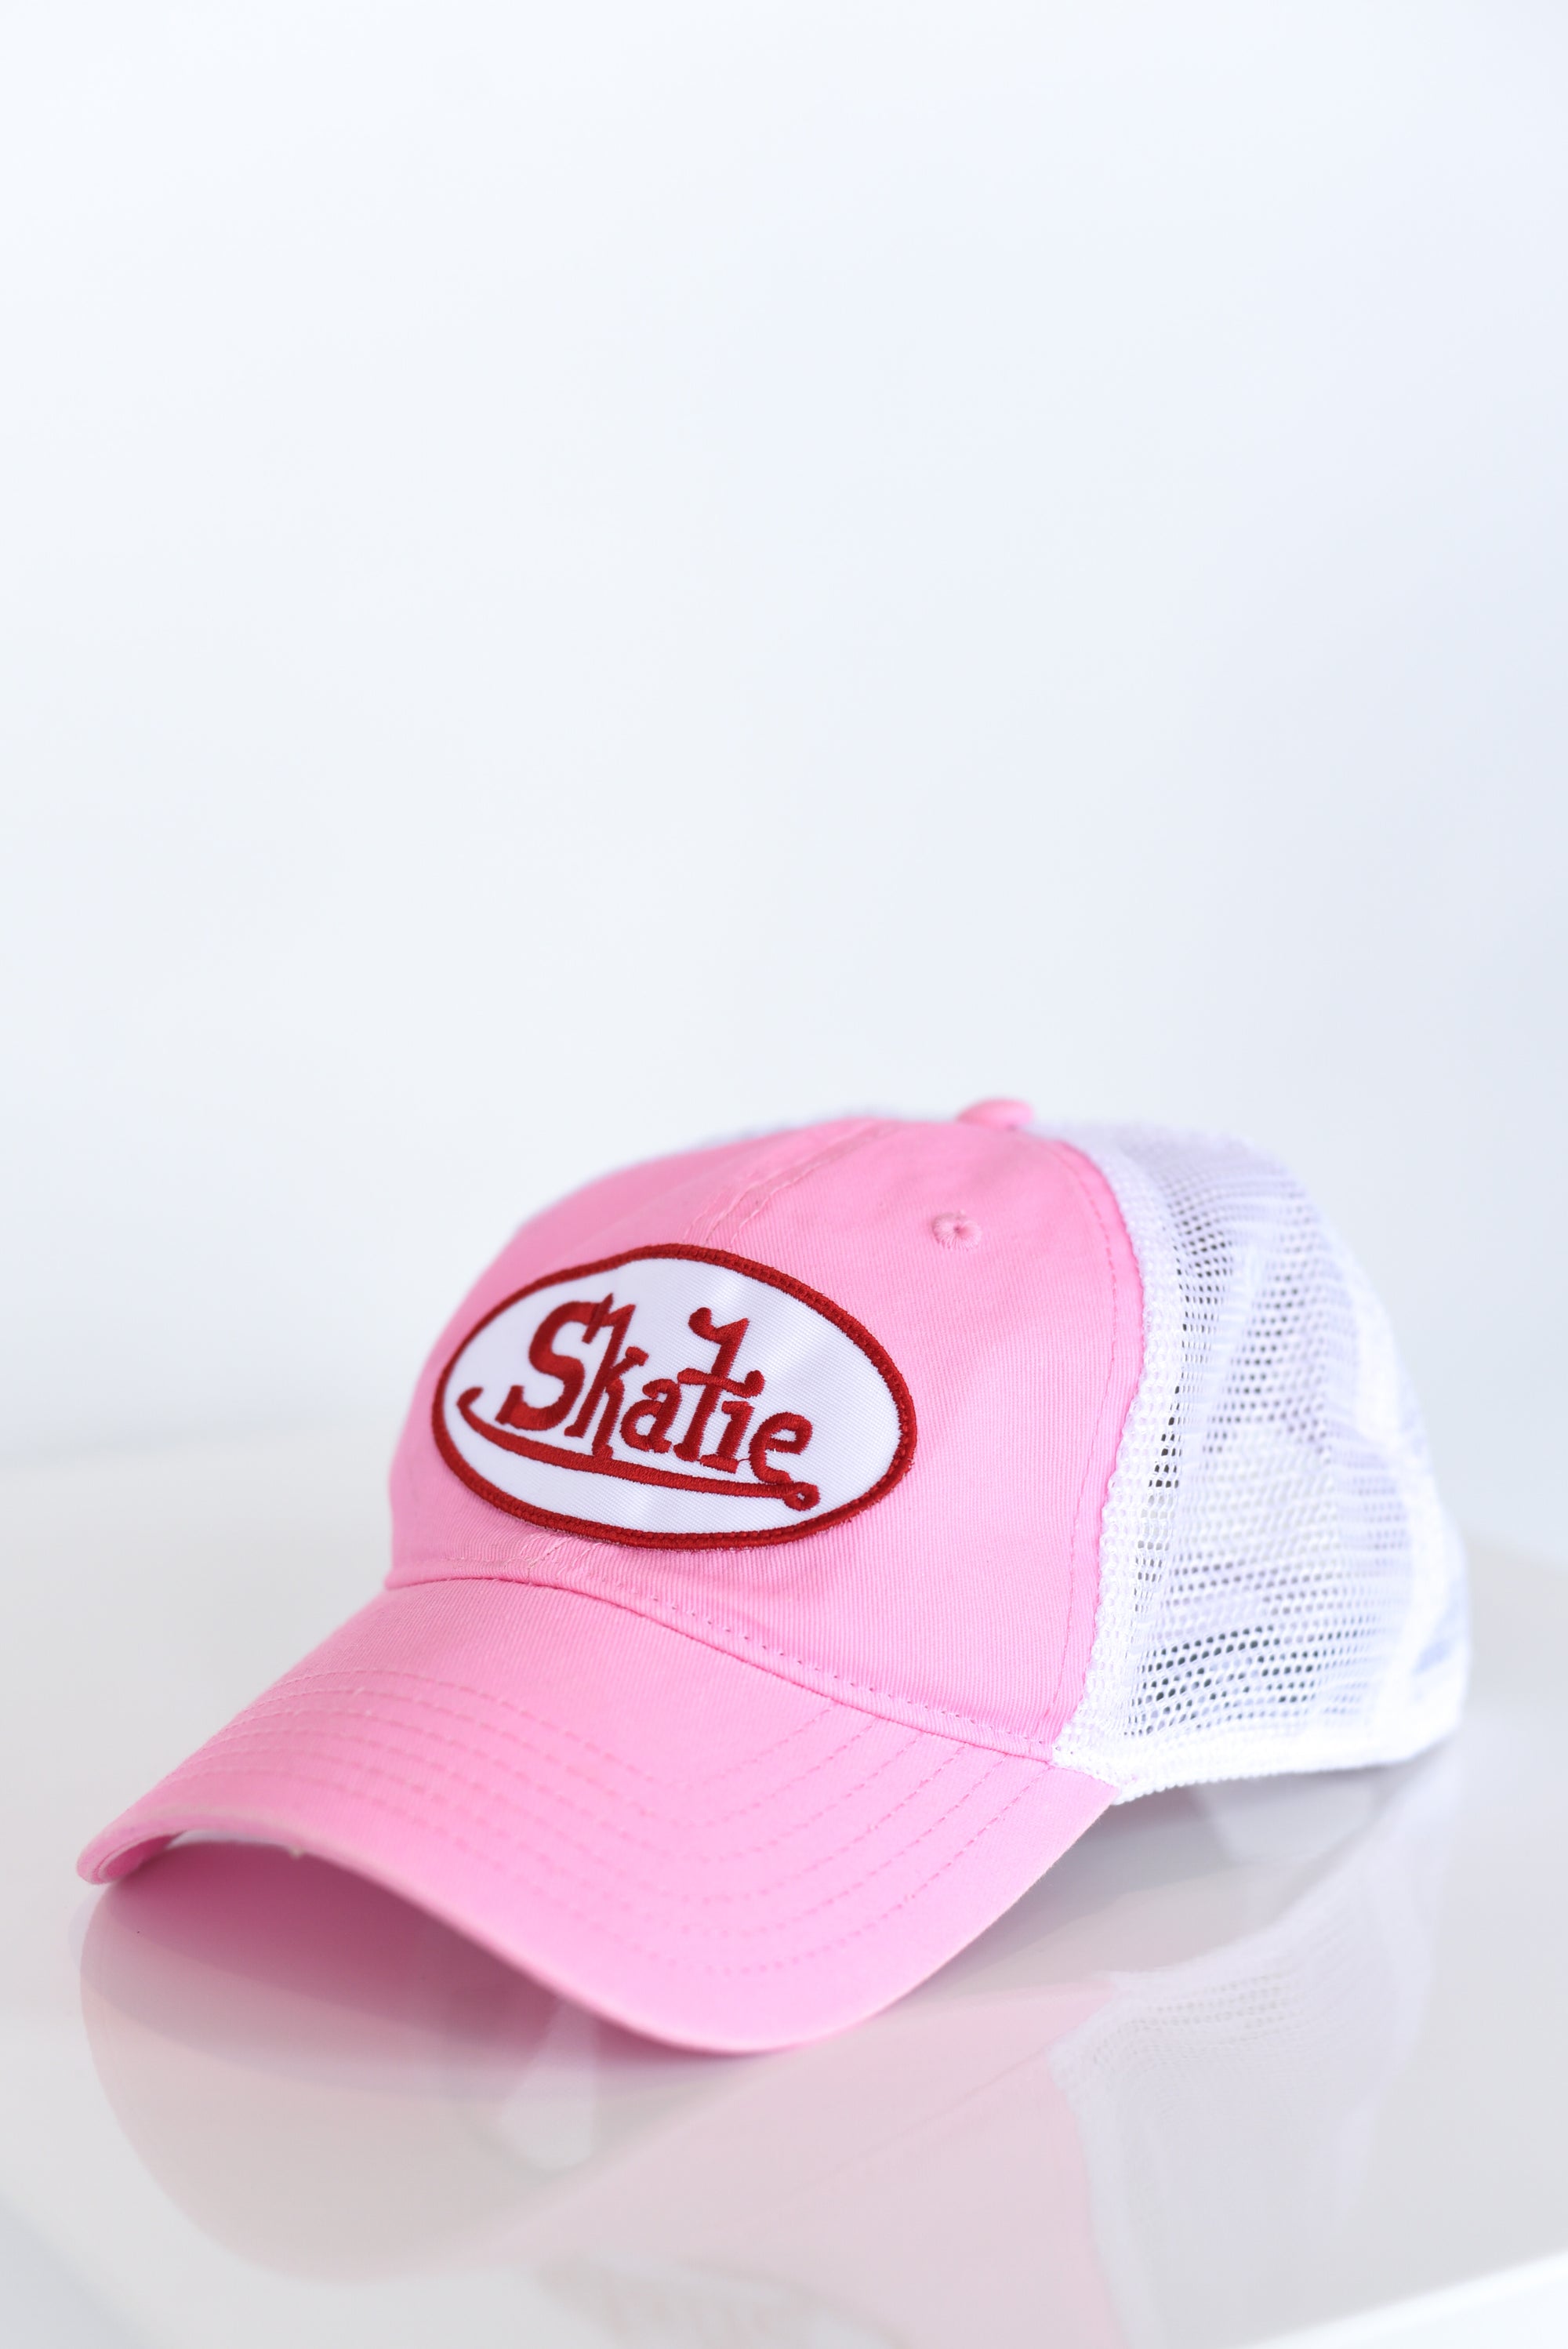 Skatie Decades Trucker Hat